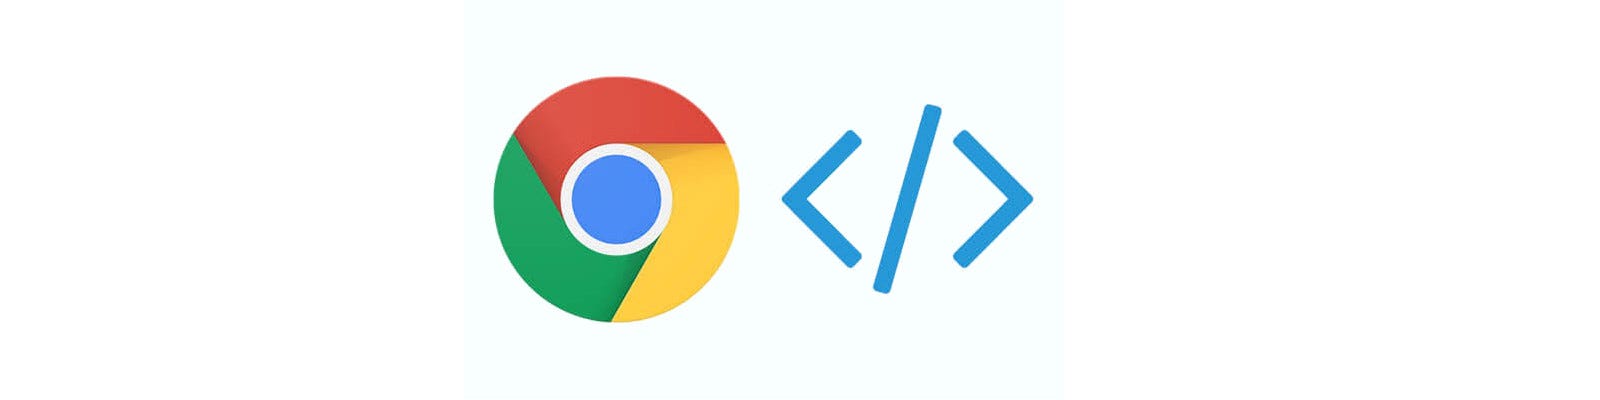 Chrome Dev Tools Logo